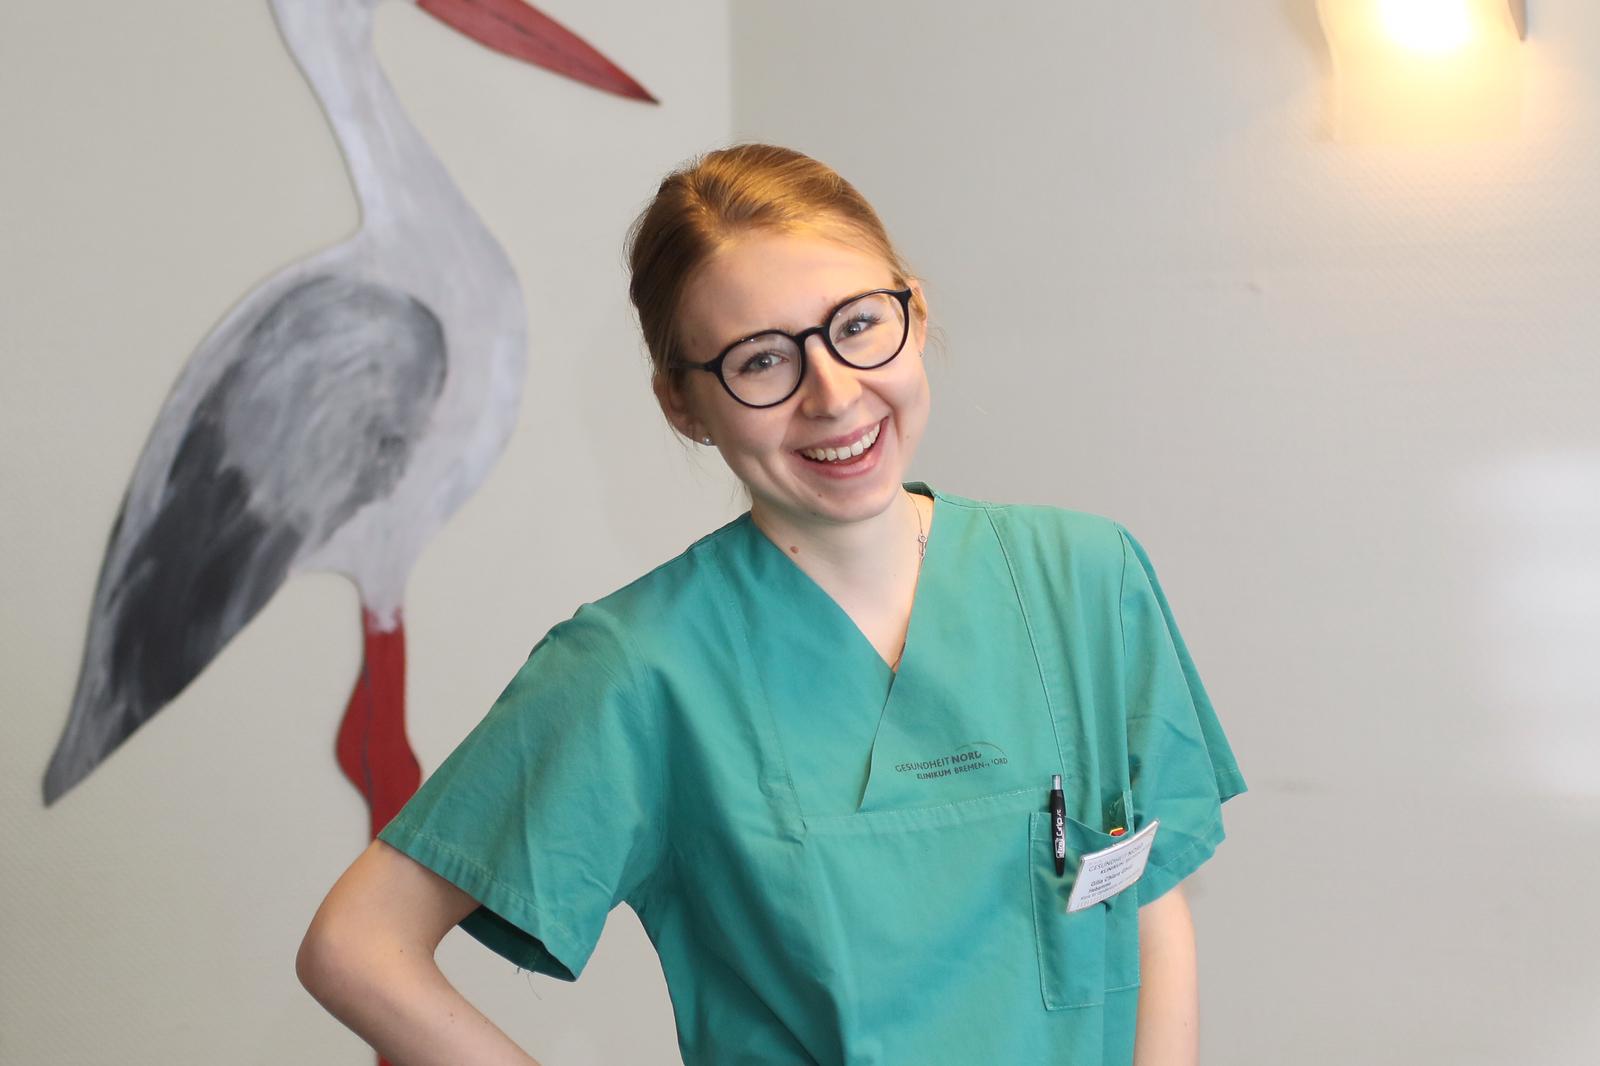 Gilia é a segunda do grupo de enfermeiras e parteiras a chegar à Alemanha. Ela estava cansada de esperar em Itália, até que o mundo inteiro voltasse à normalidade.